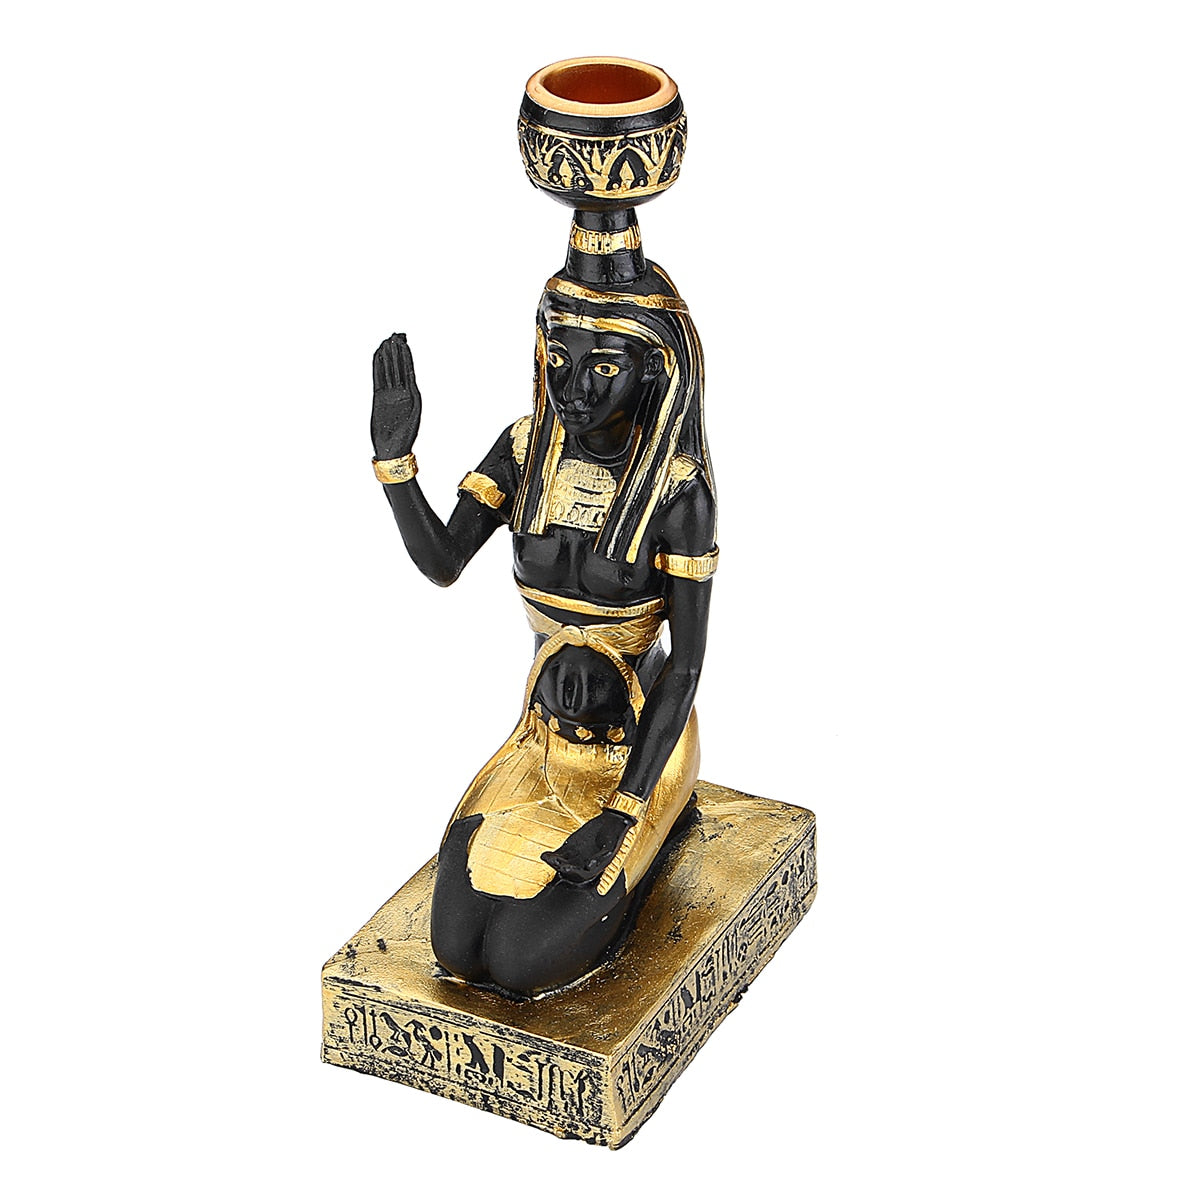 Hartsihahmot kynttilänholder retro -muinaiset egyptiläiset jumalatar Sfinx anubis muotoilevat kynttilänjalkakäsityön kodin koristeelliset koristeet